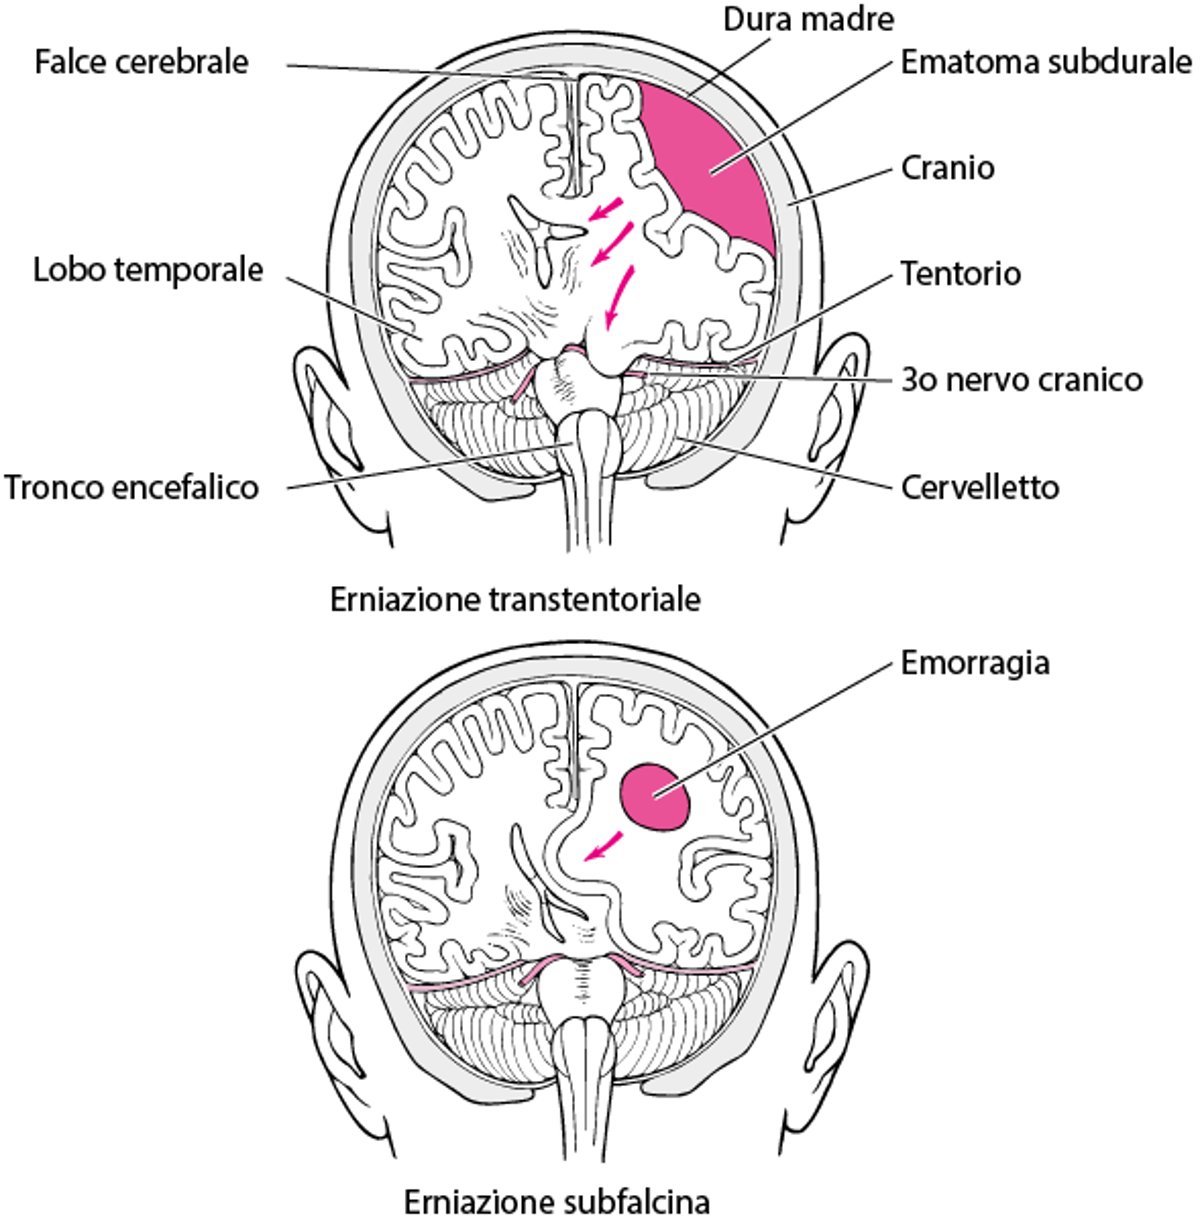 Ernia cerebrale